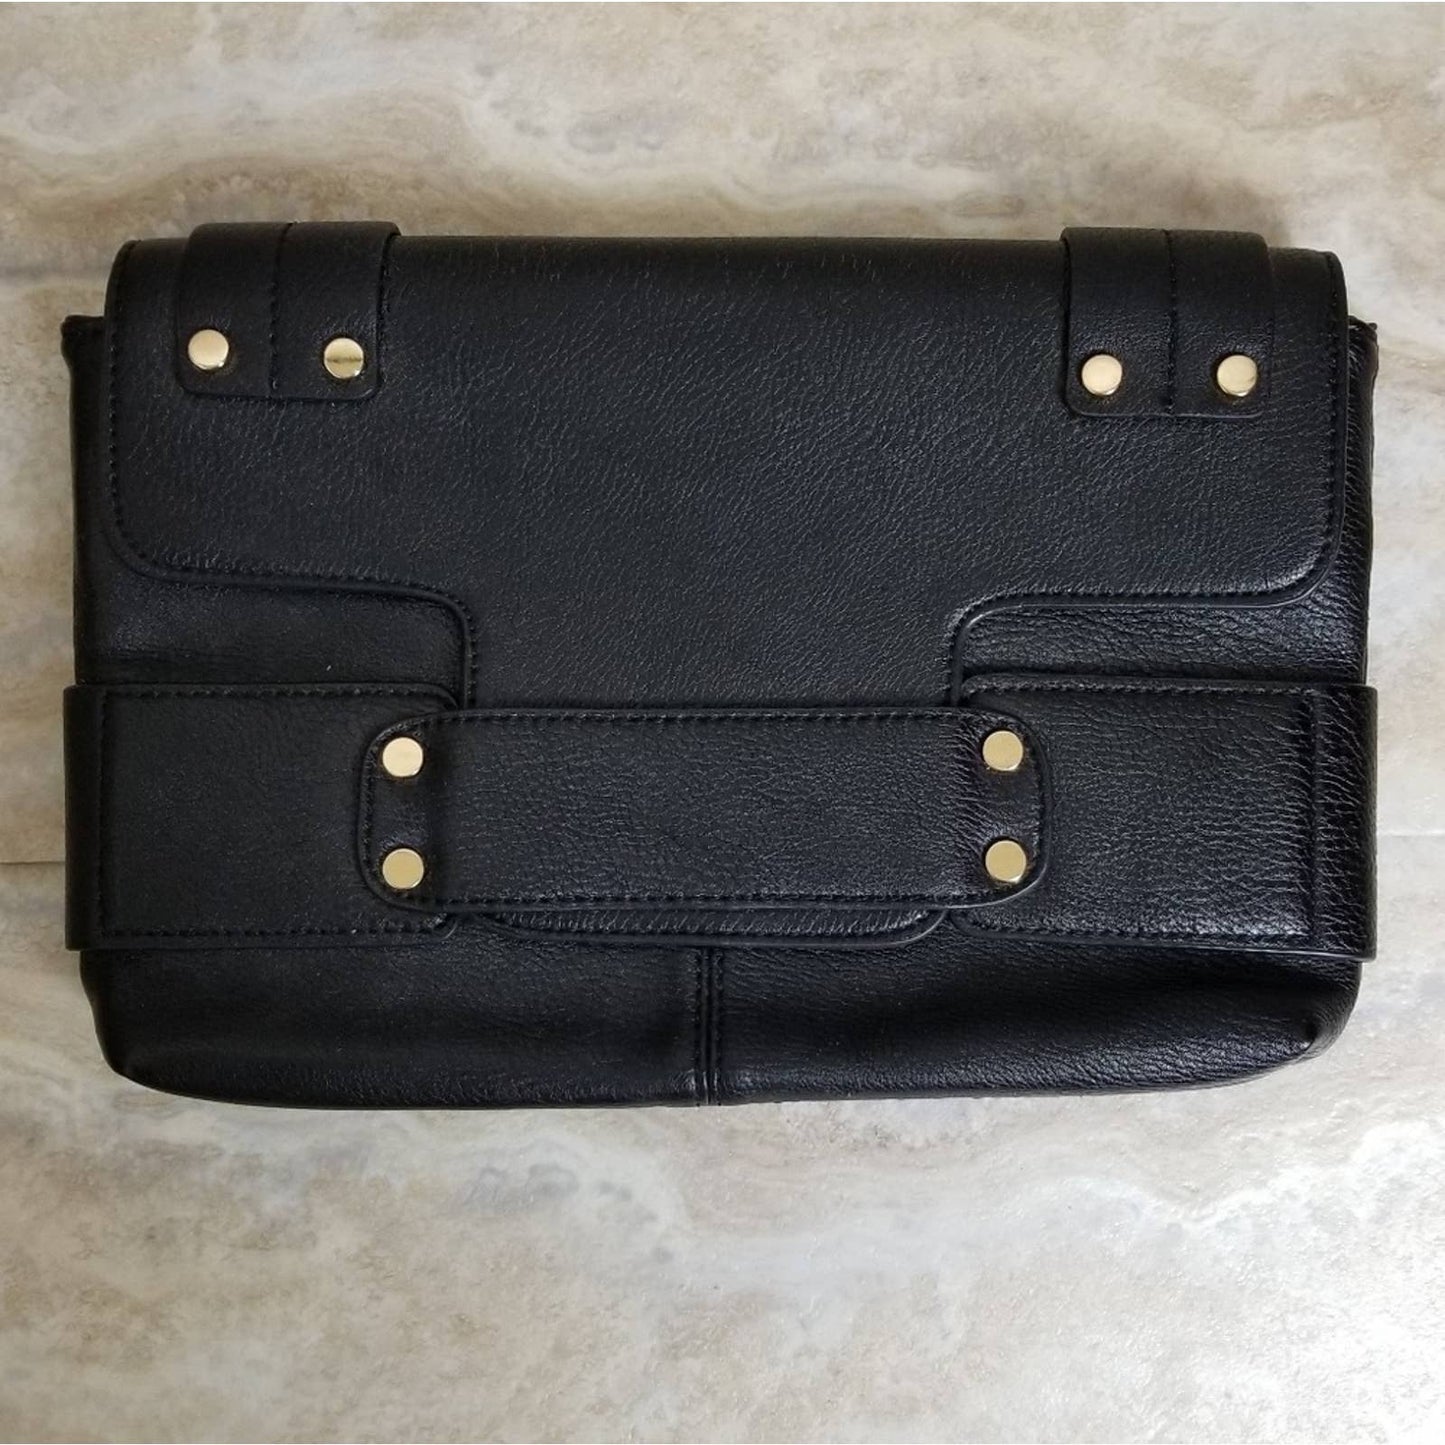 Poppie Black Faux Leather Envelope Flap Closure Clutch Handbag